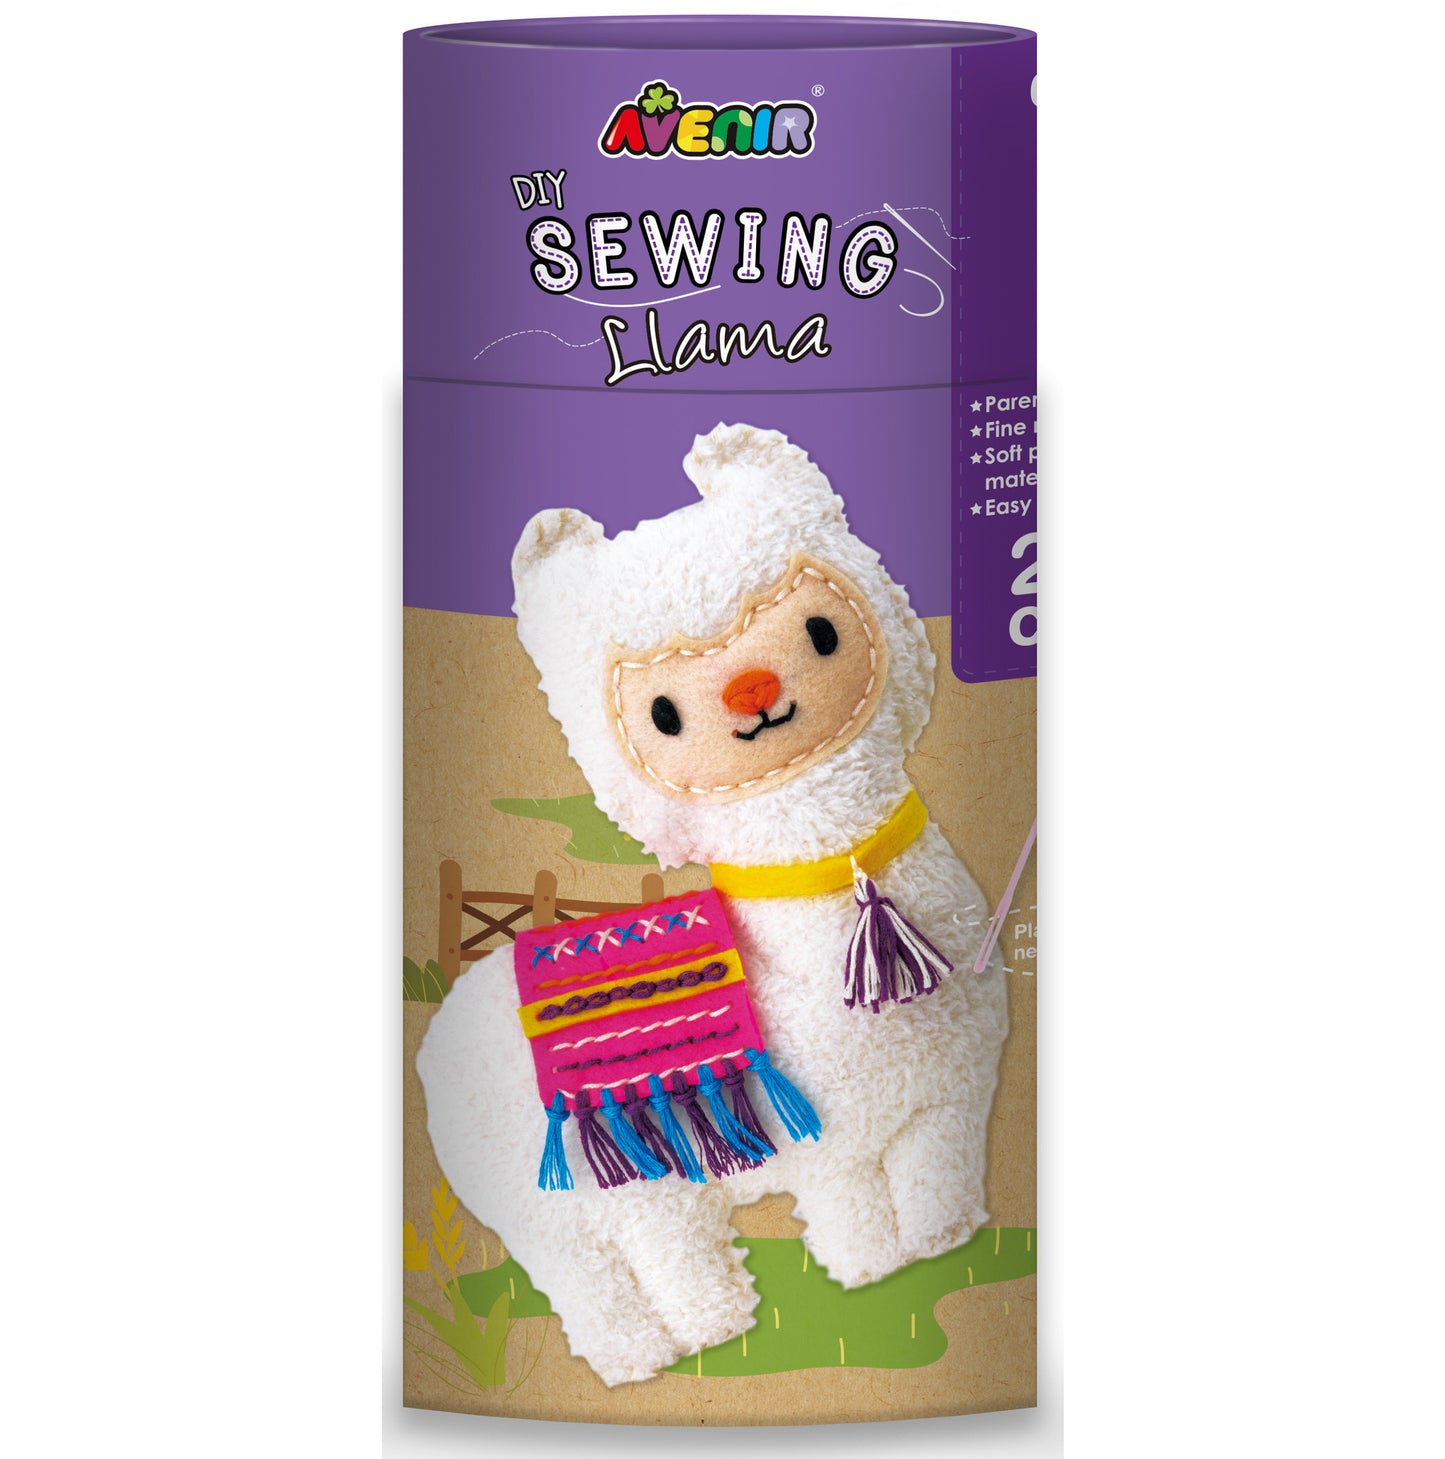 Sewing Doll Llama